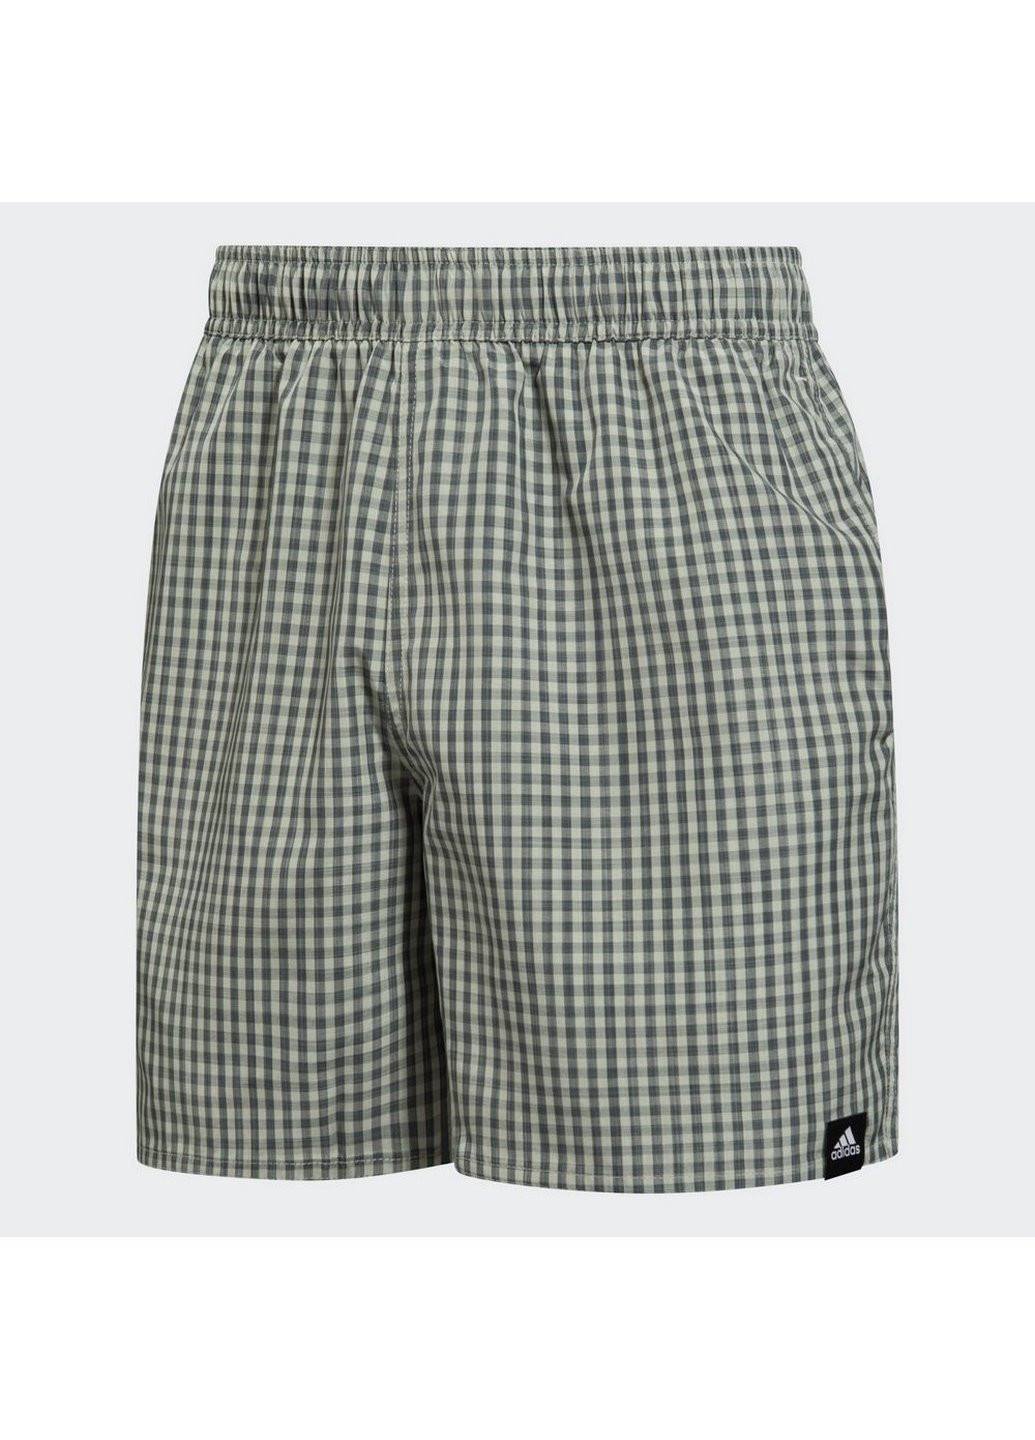 Мужские пляжные шорты Check GQ1110 adidas (267407565)